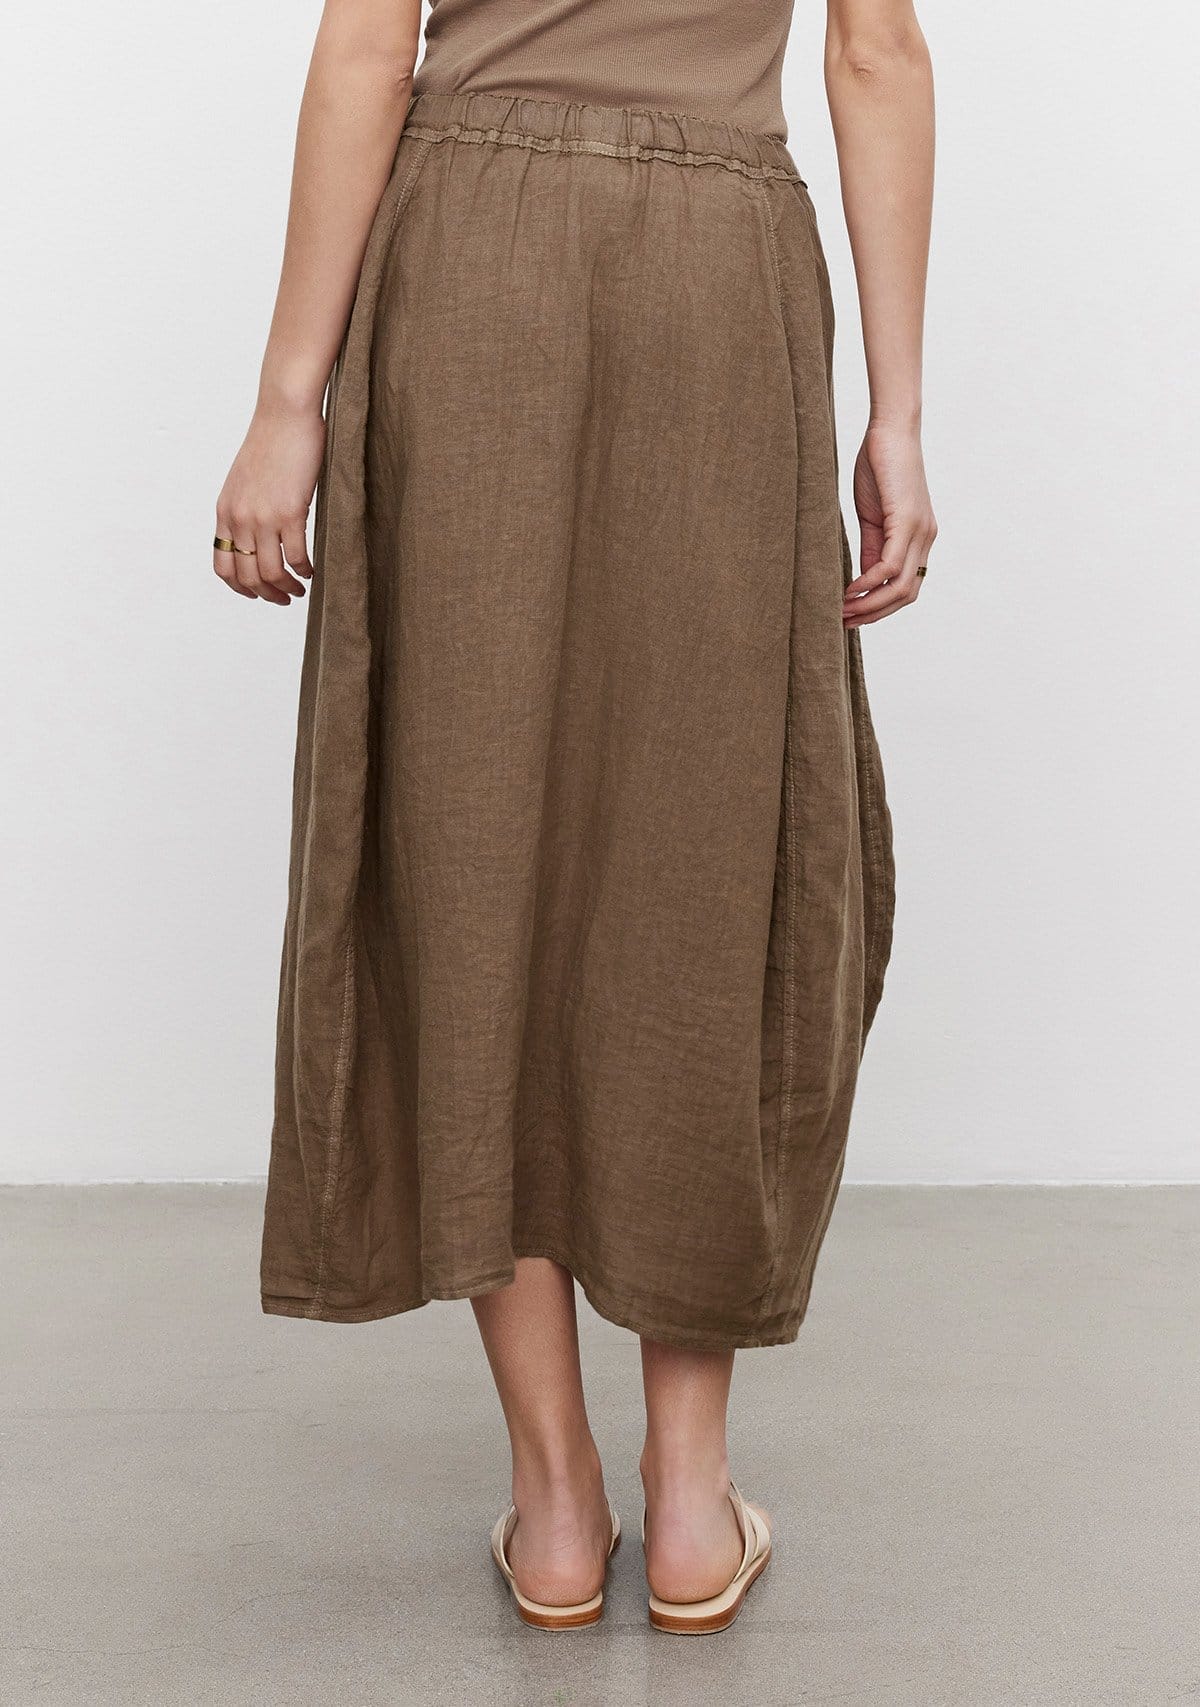 Model wearing the Fae Linen Skirt